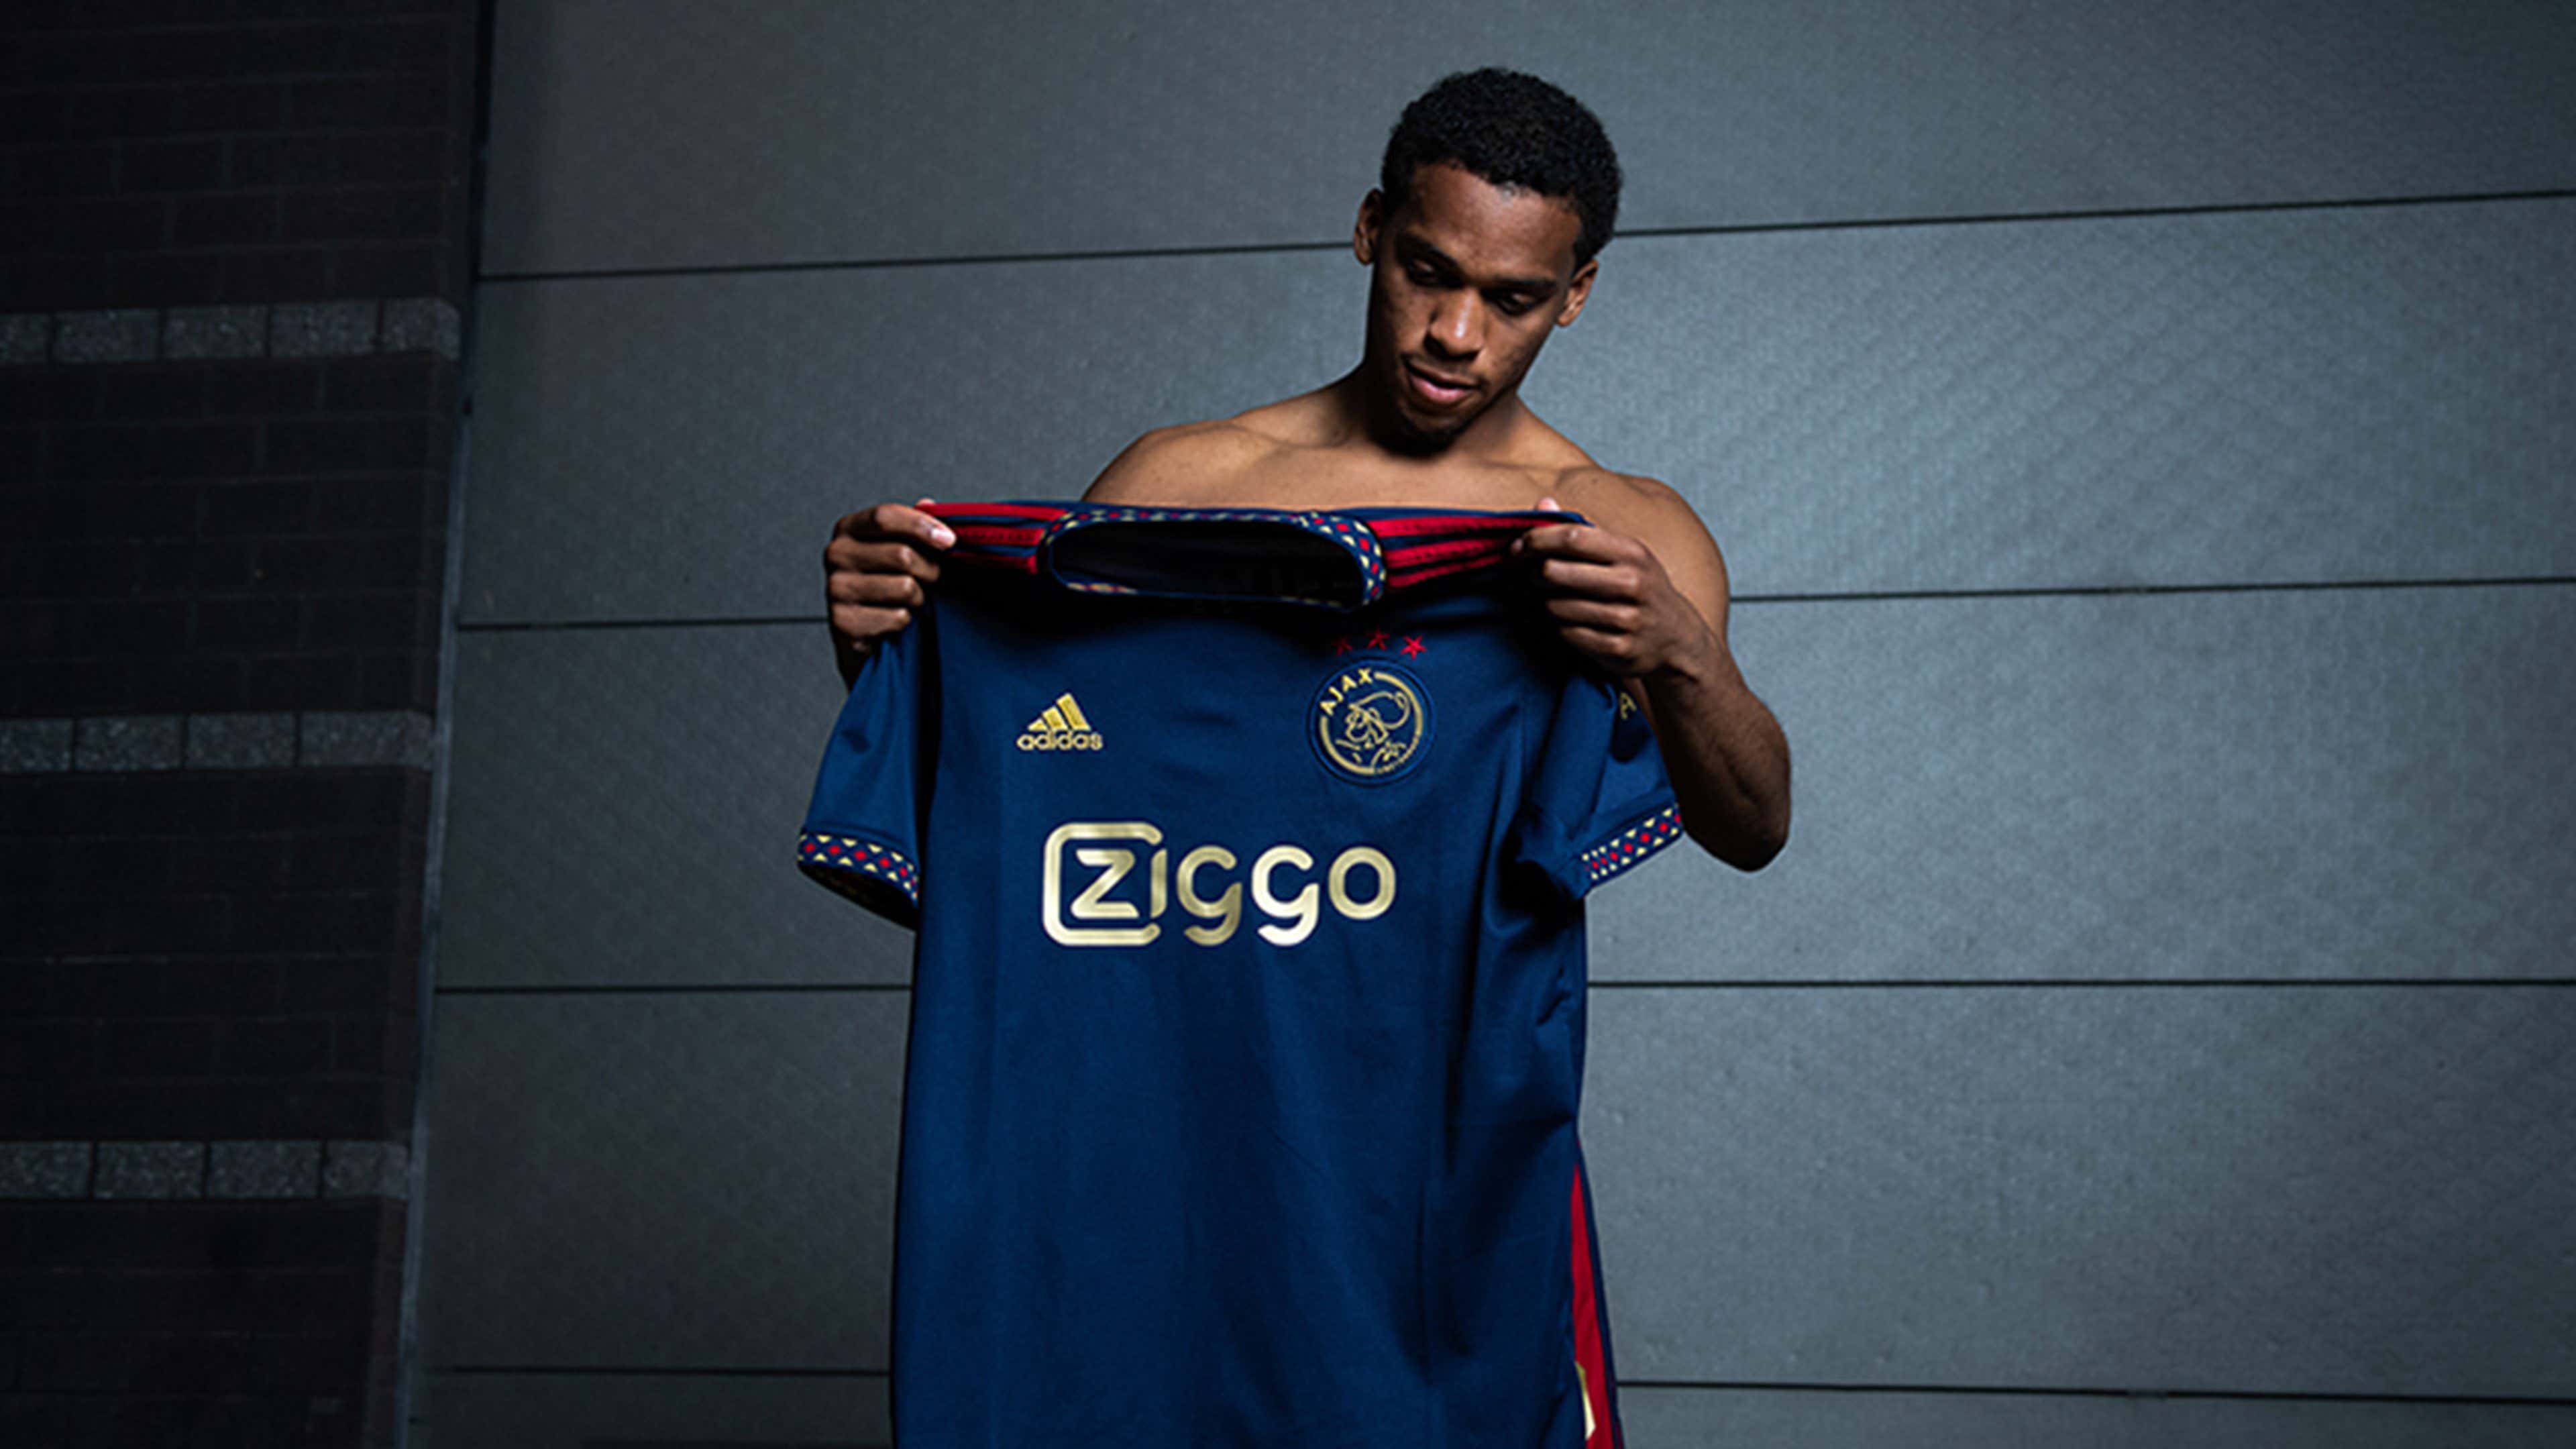 Peru Badkamer Aan boord Ajax unveil their 'Golden Standard' 2022-23 away kit | Goal.com